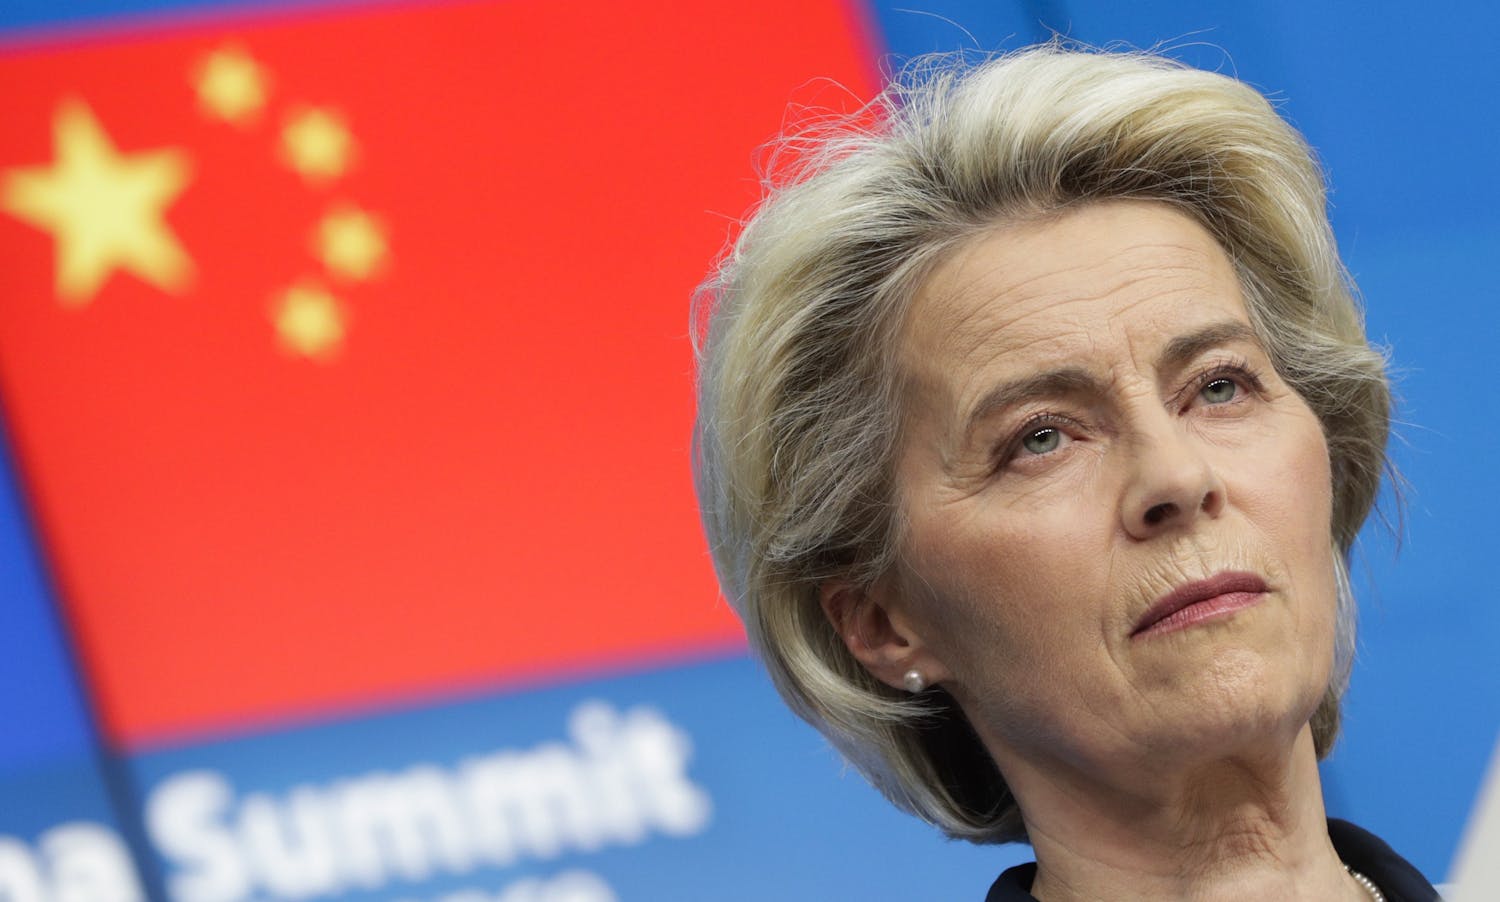 Tiongkok telah “melompat ke dalam lubang,” dan hal ini juga sedang coba dilakukan oleh Brussel